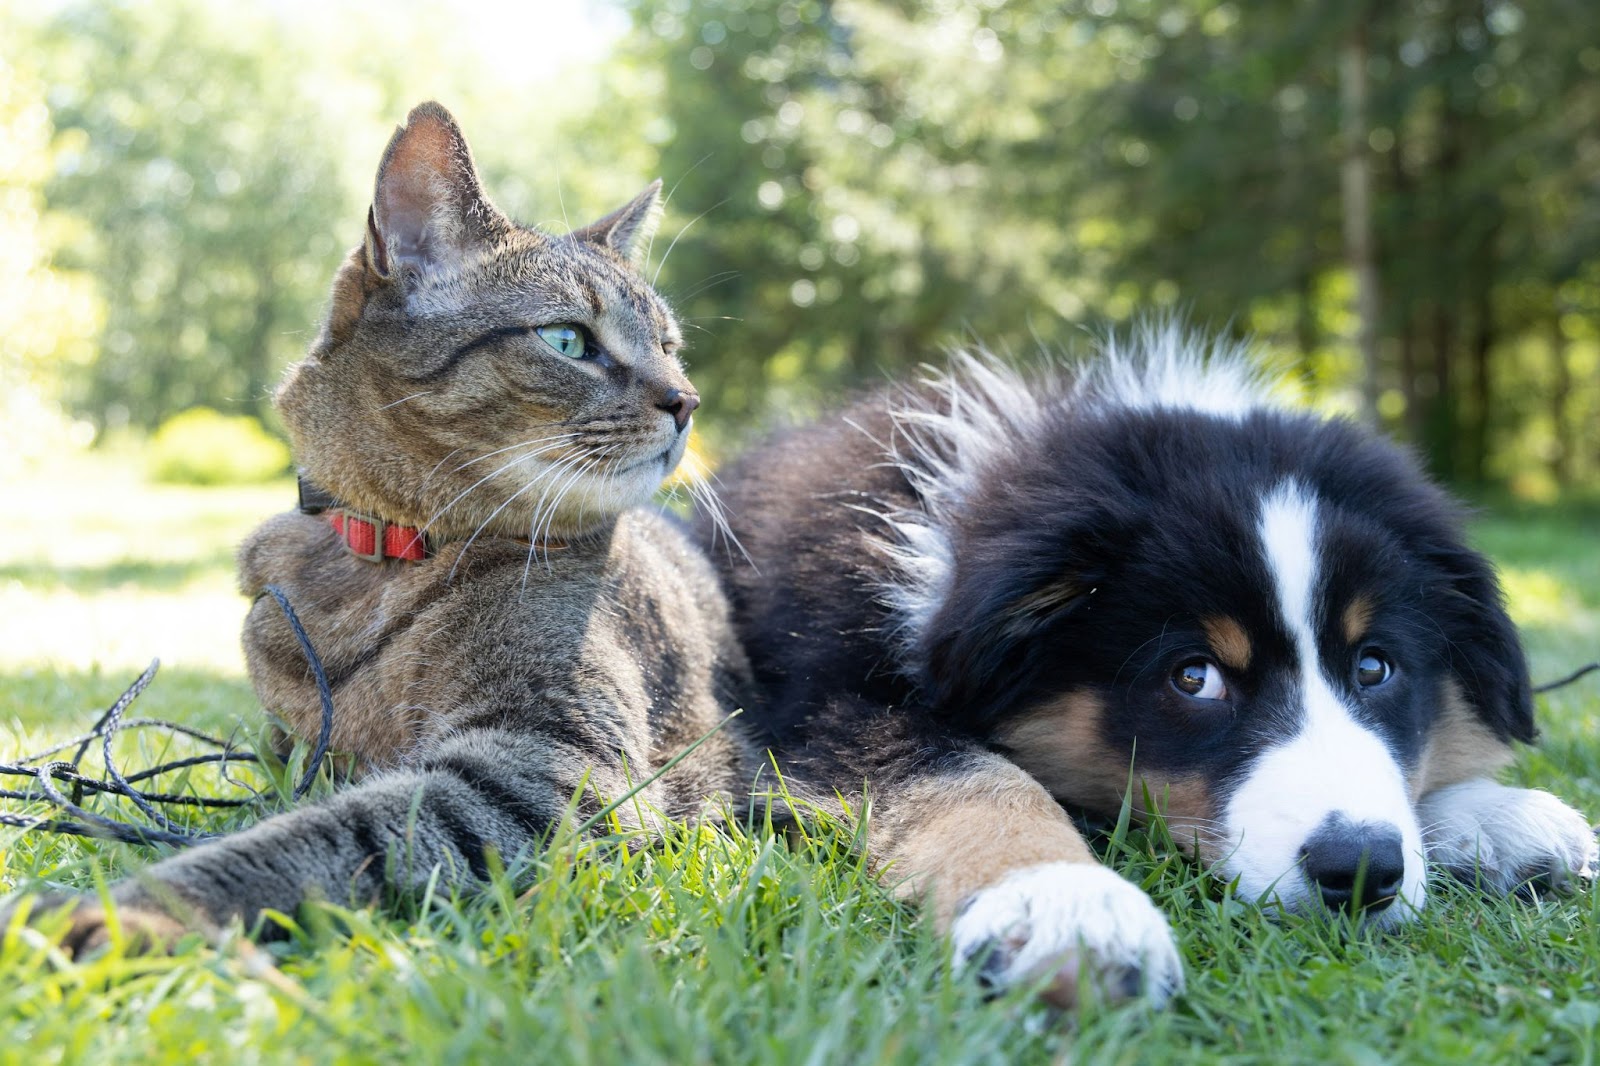 Pet cat and dog enjoying the outdoors